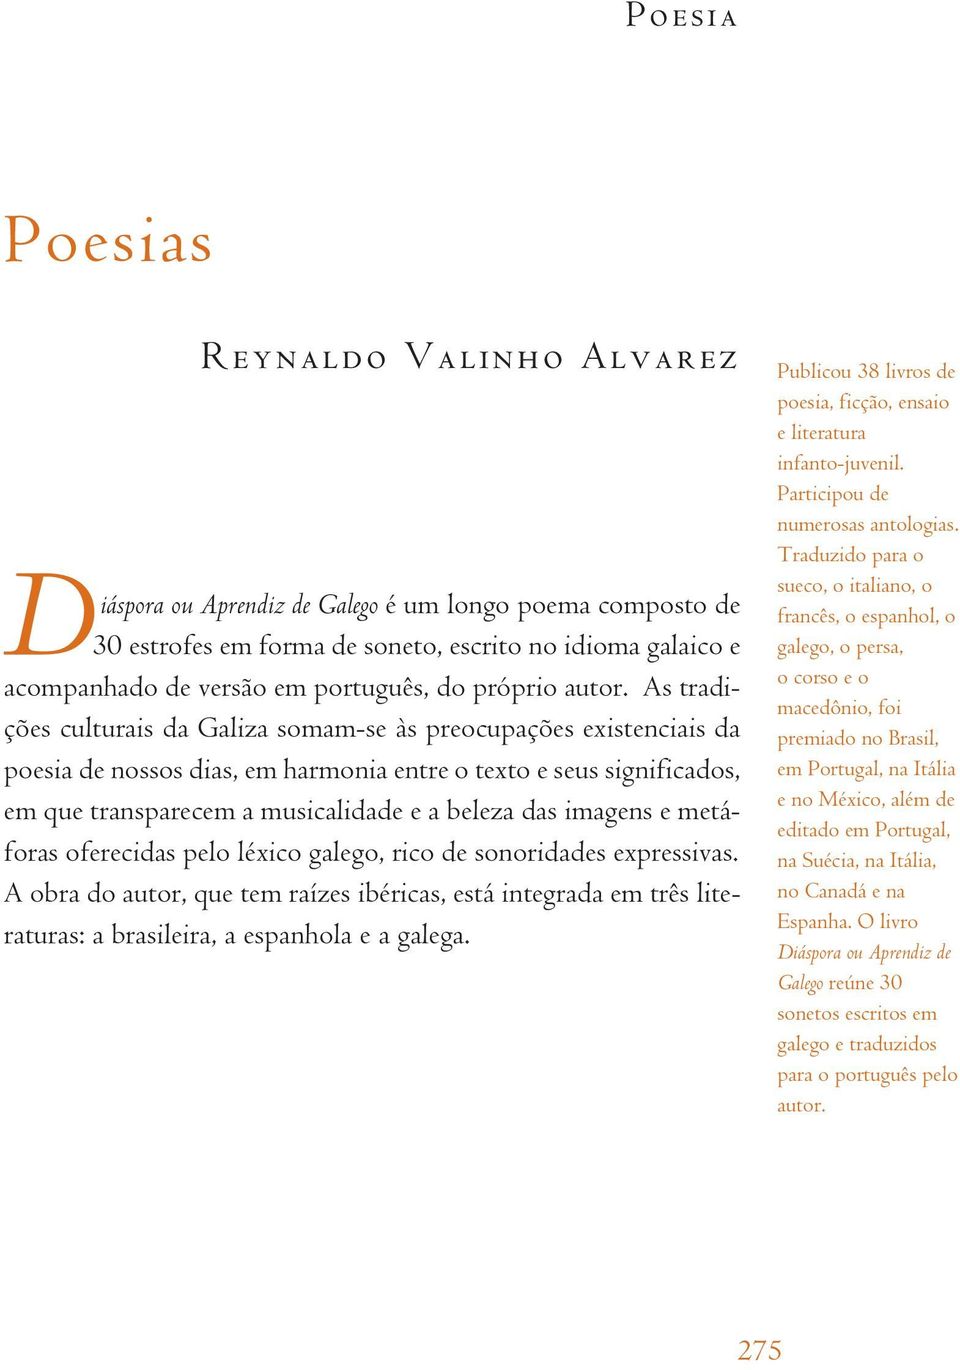 As tradições culturais da Galiza somam-se às preocupações existenciais da poesia de nossos dias, em harmonia entre o texto e seus significados, em que transparecem a musicalidade e a beleza das